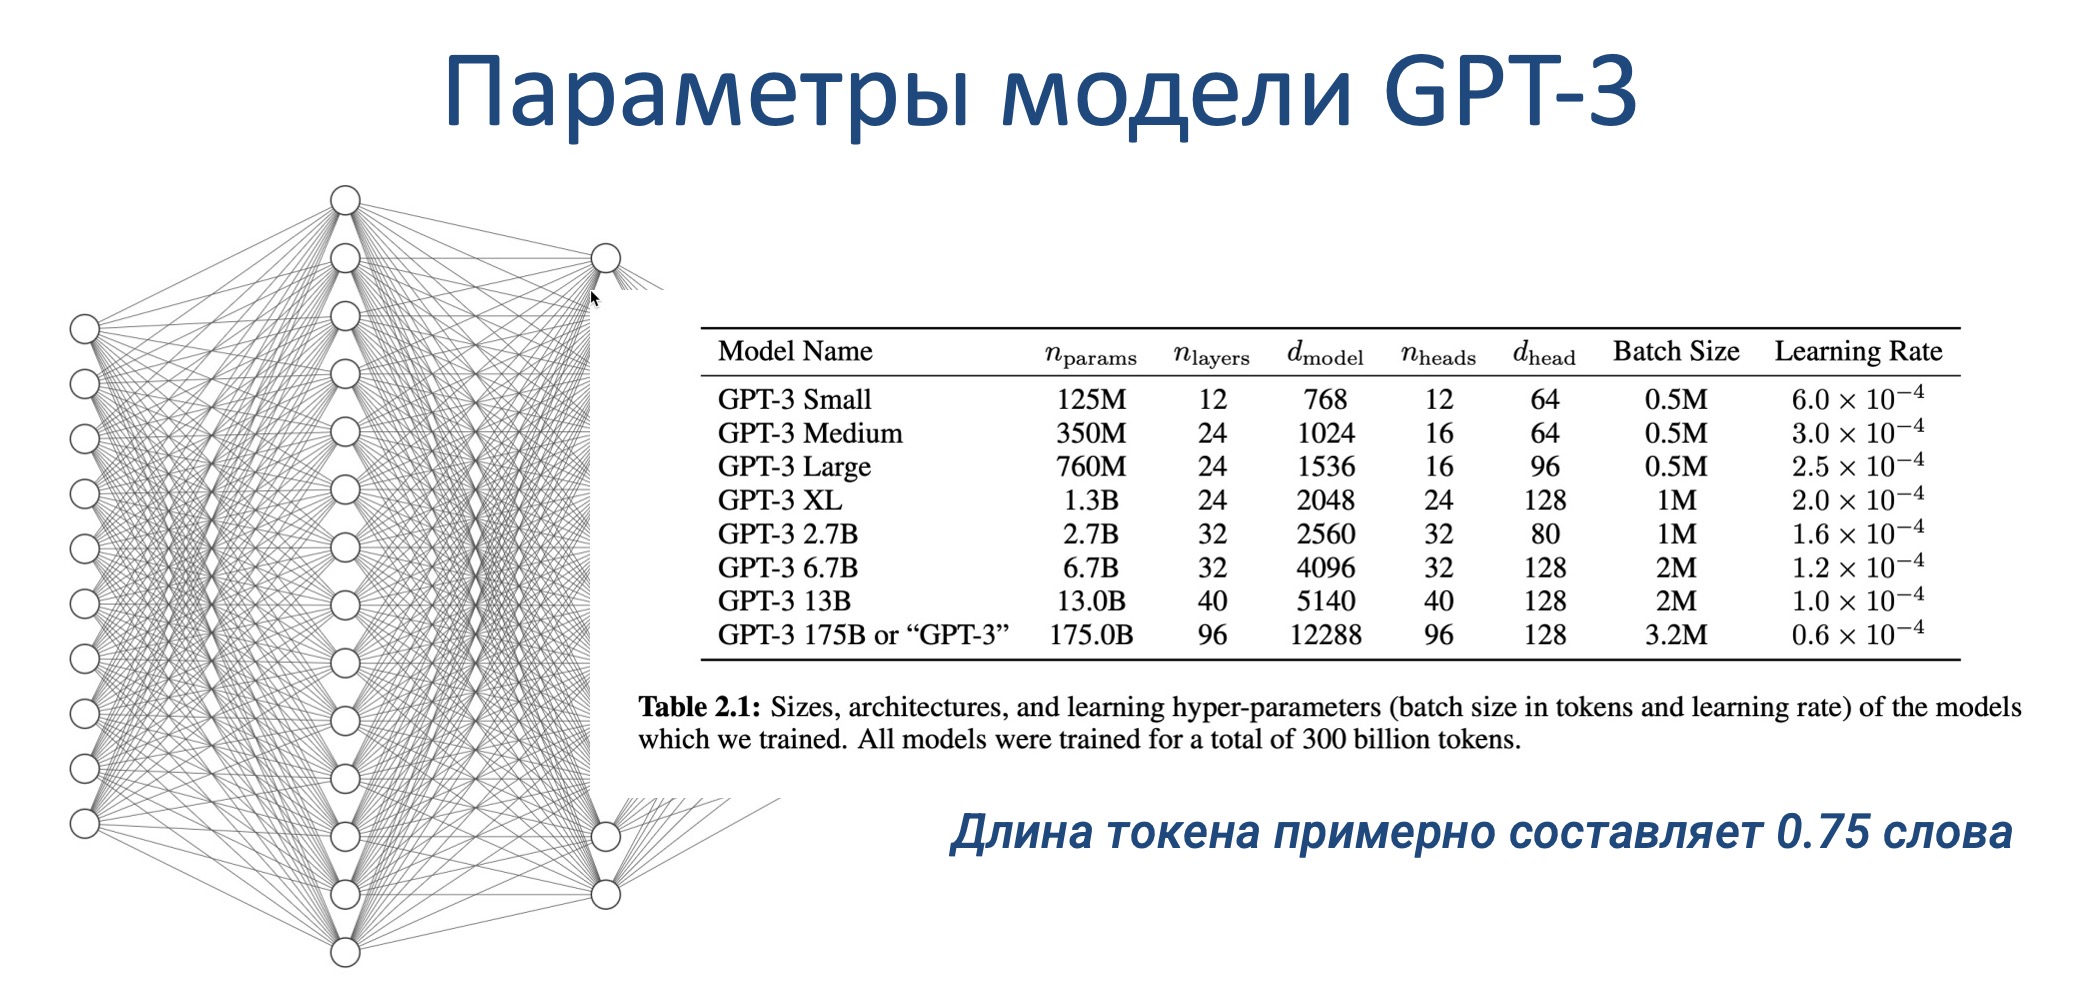 Параметры модели GTP-3